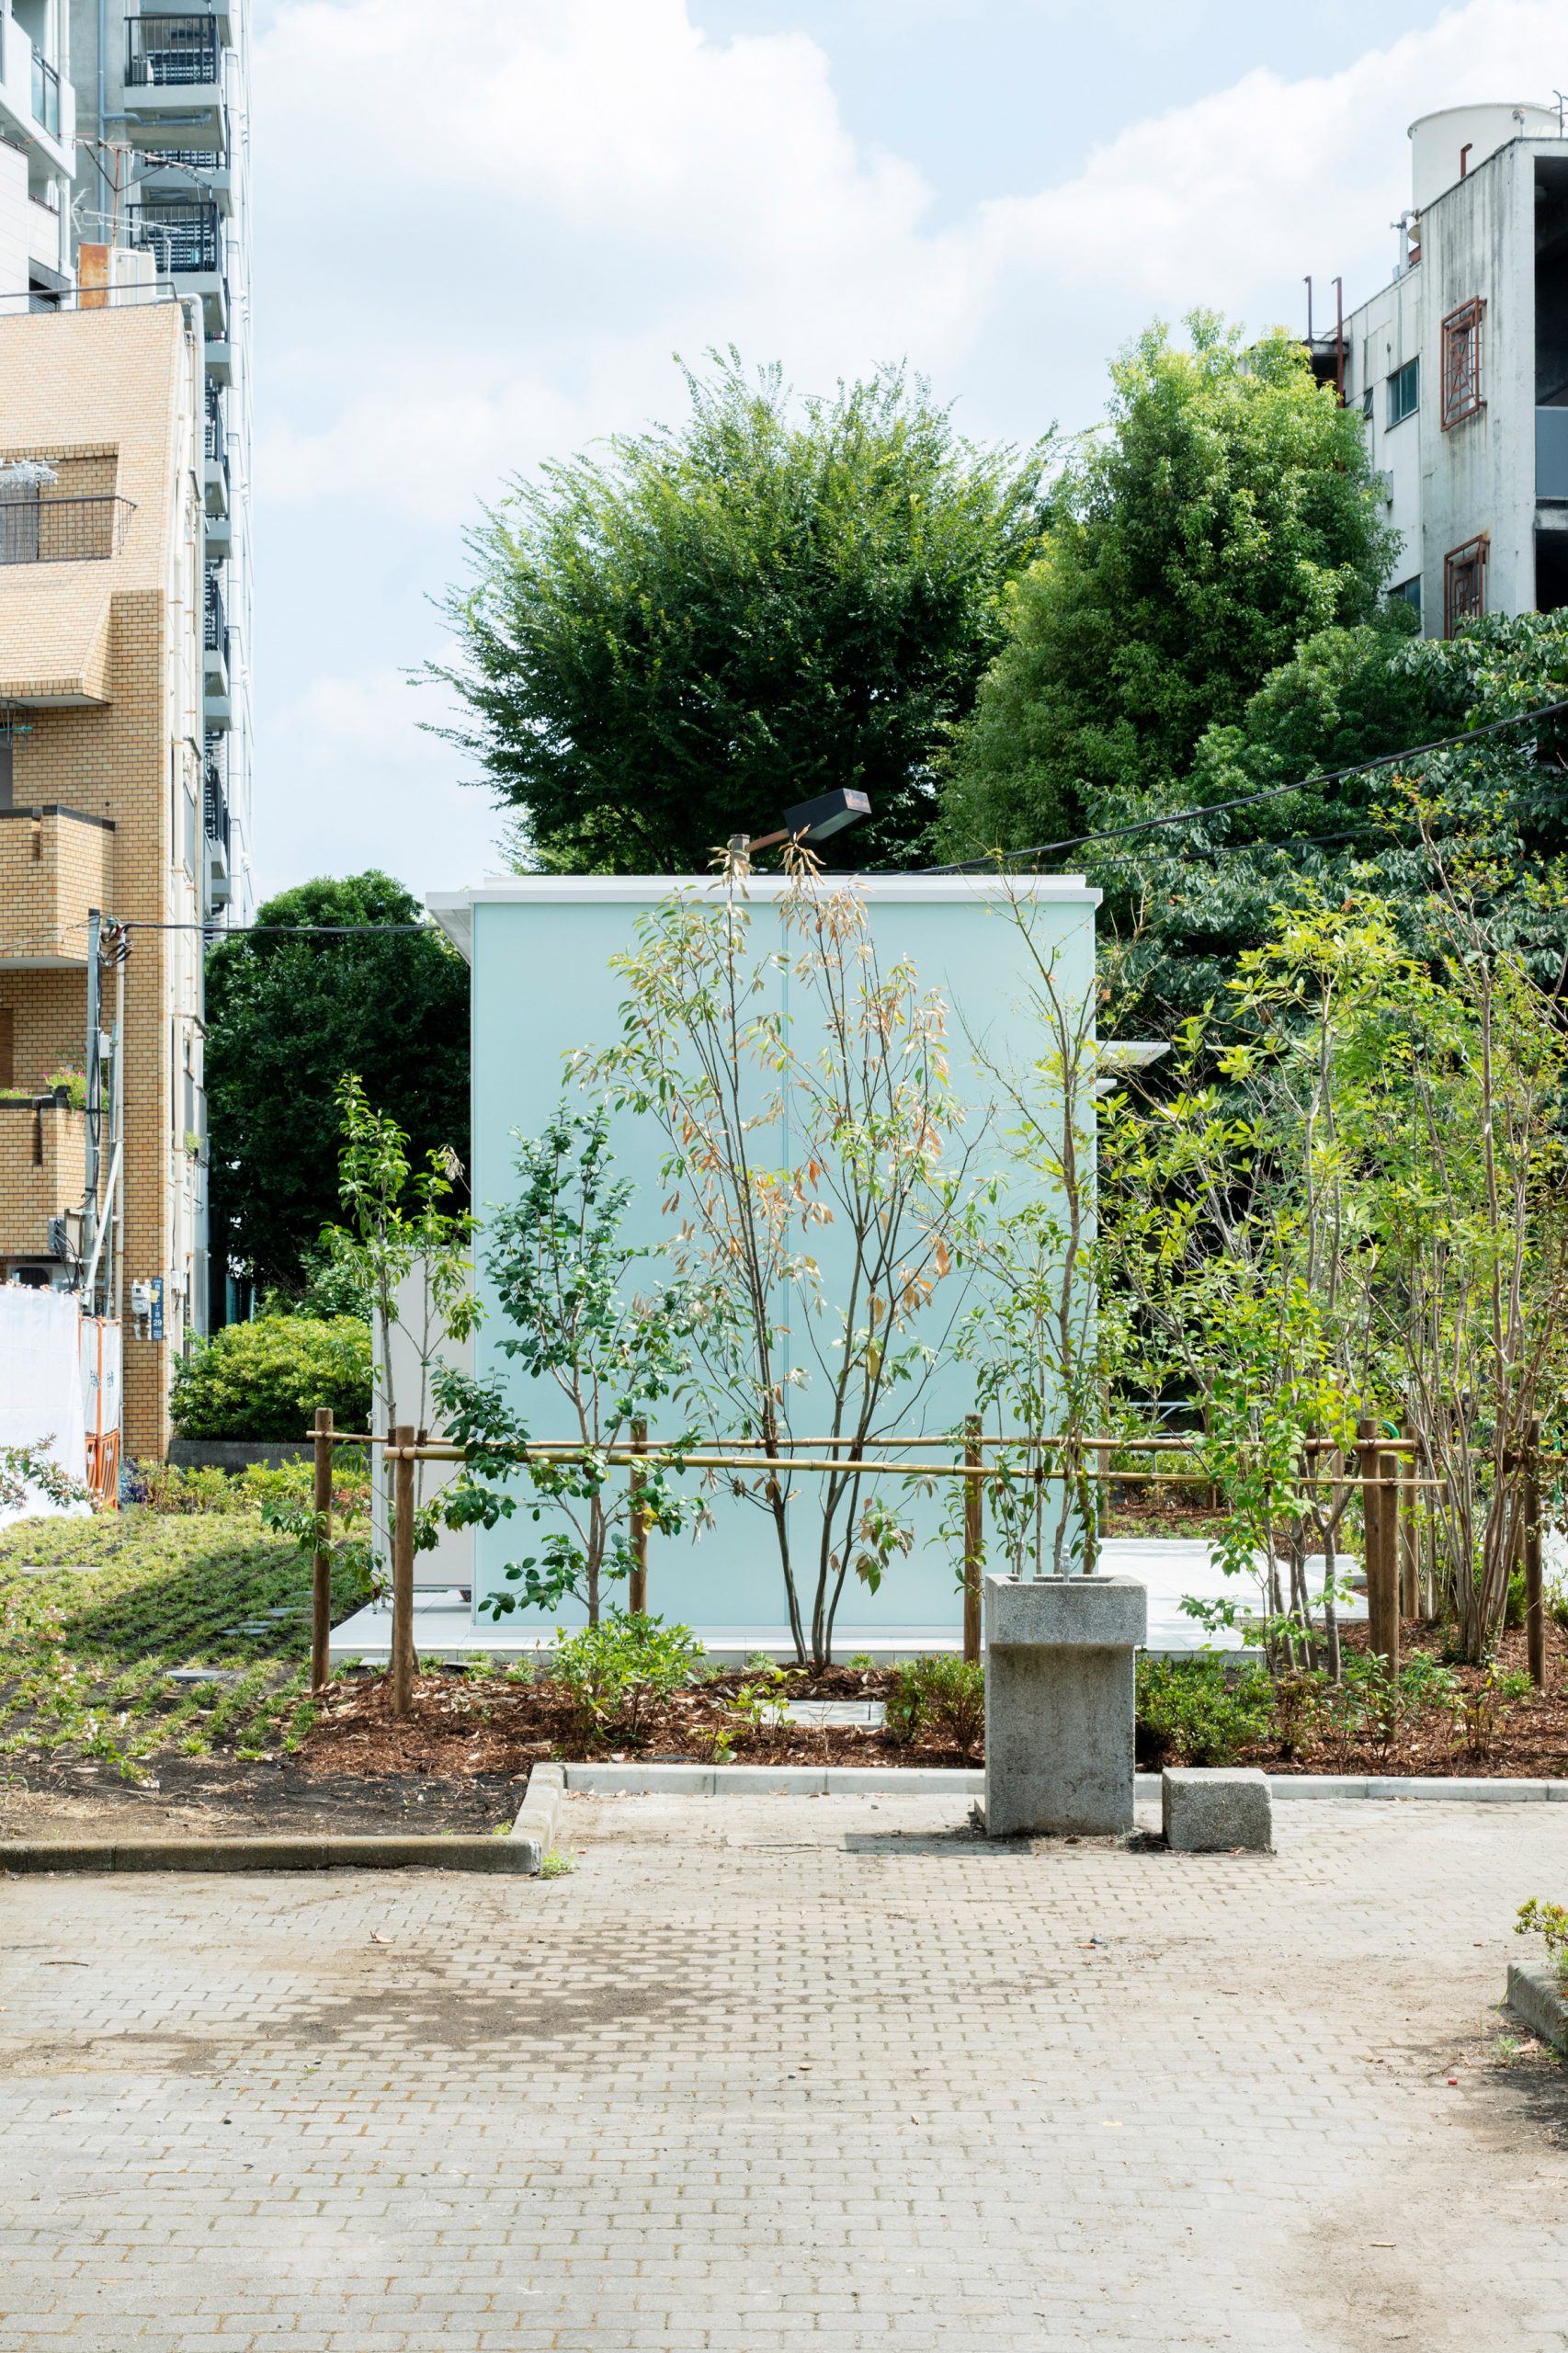 Takenosuke Sakakura's toilets made from green frosted glass